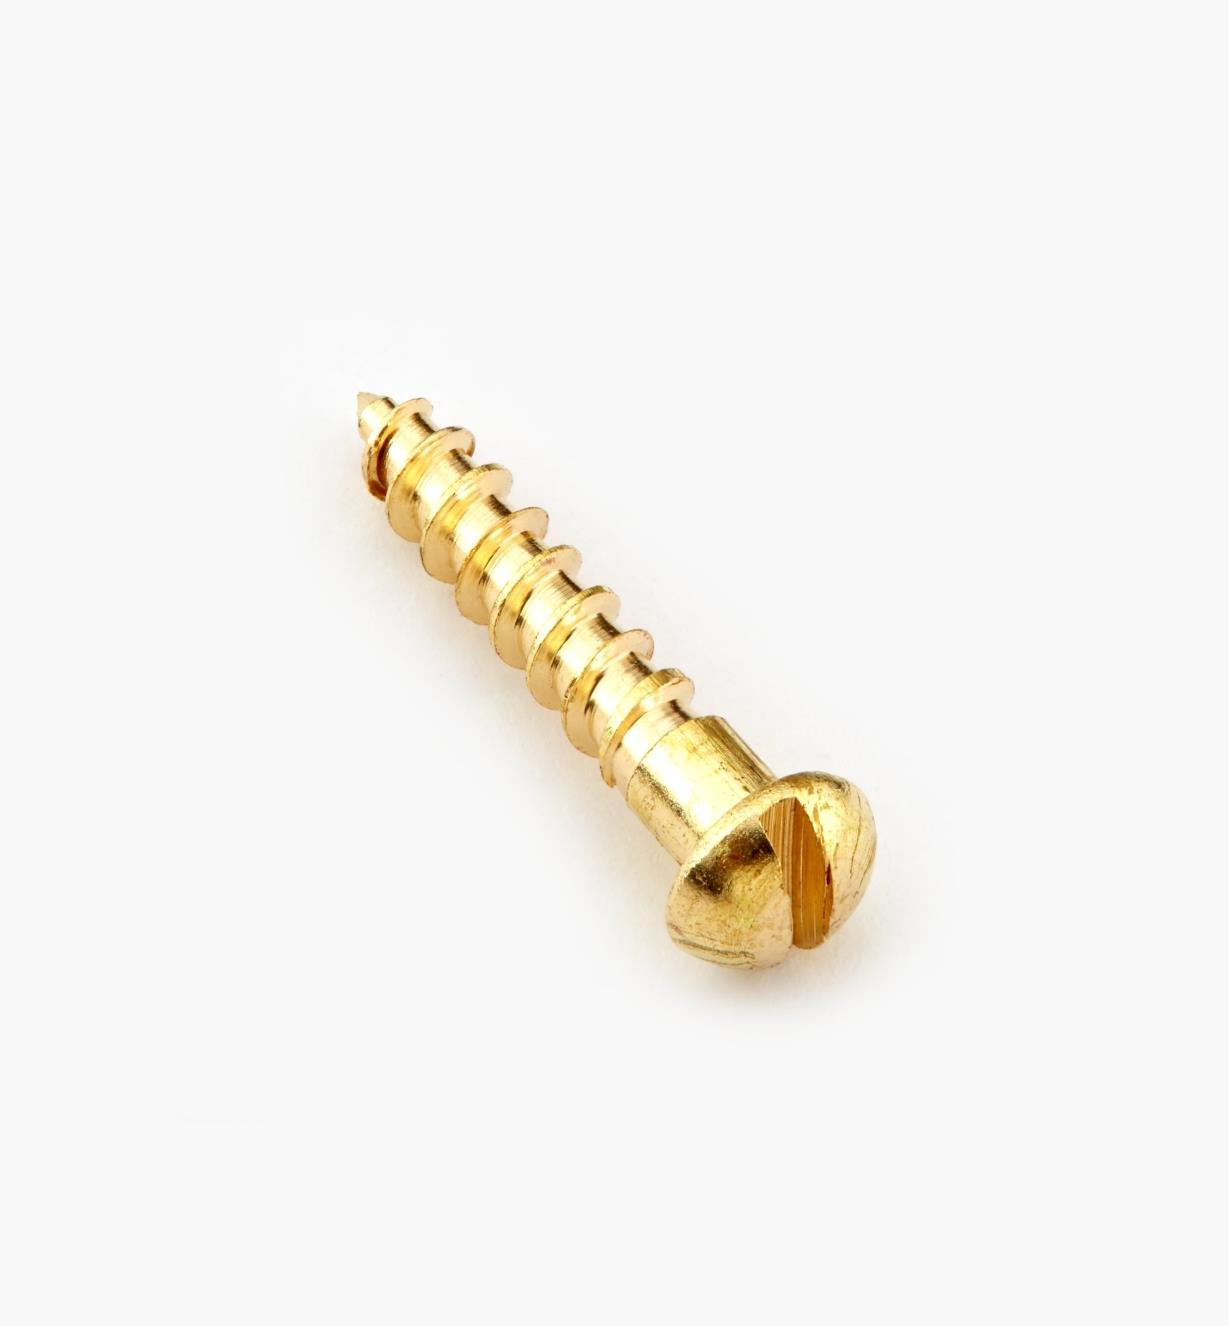 91Y0404 - #4, 5/8" Round Brass Screws, pkg. of 100